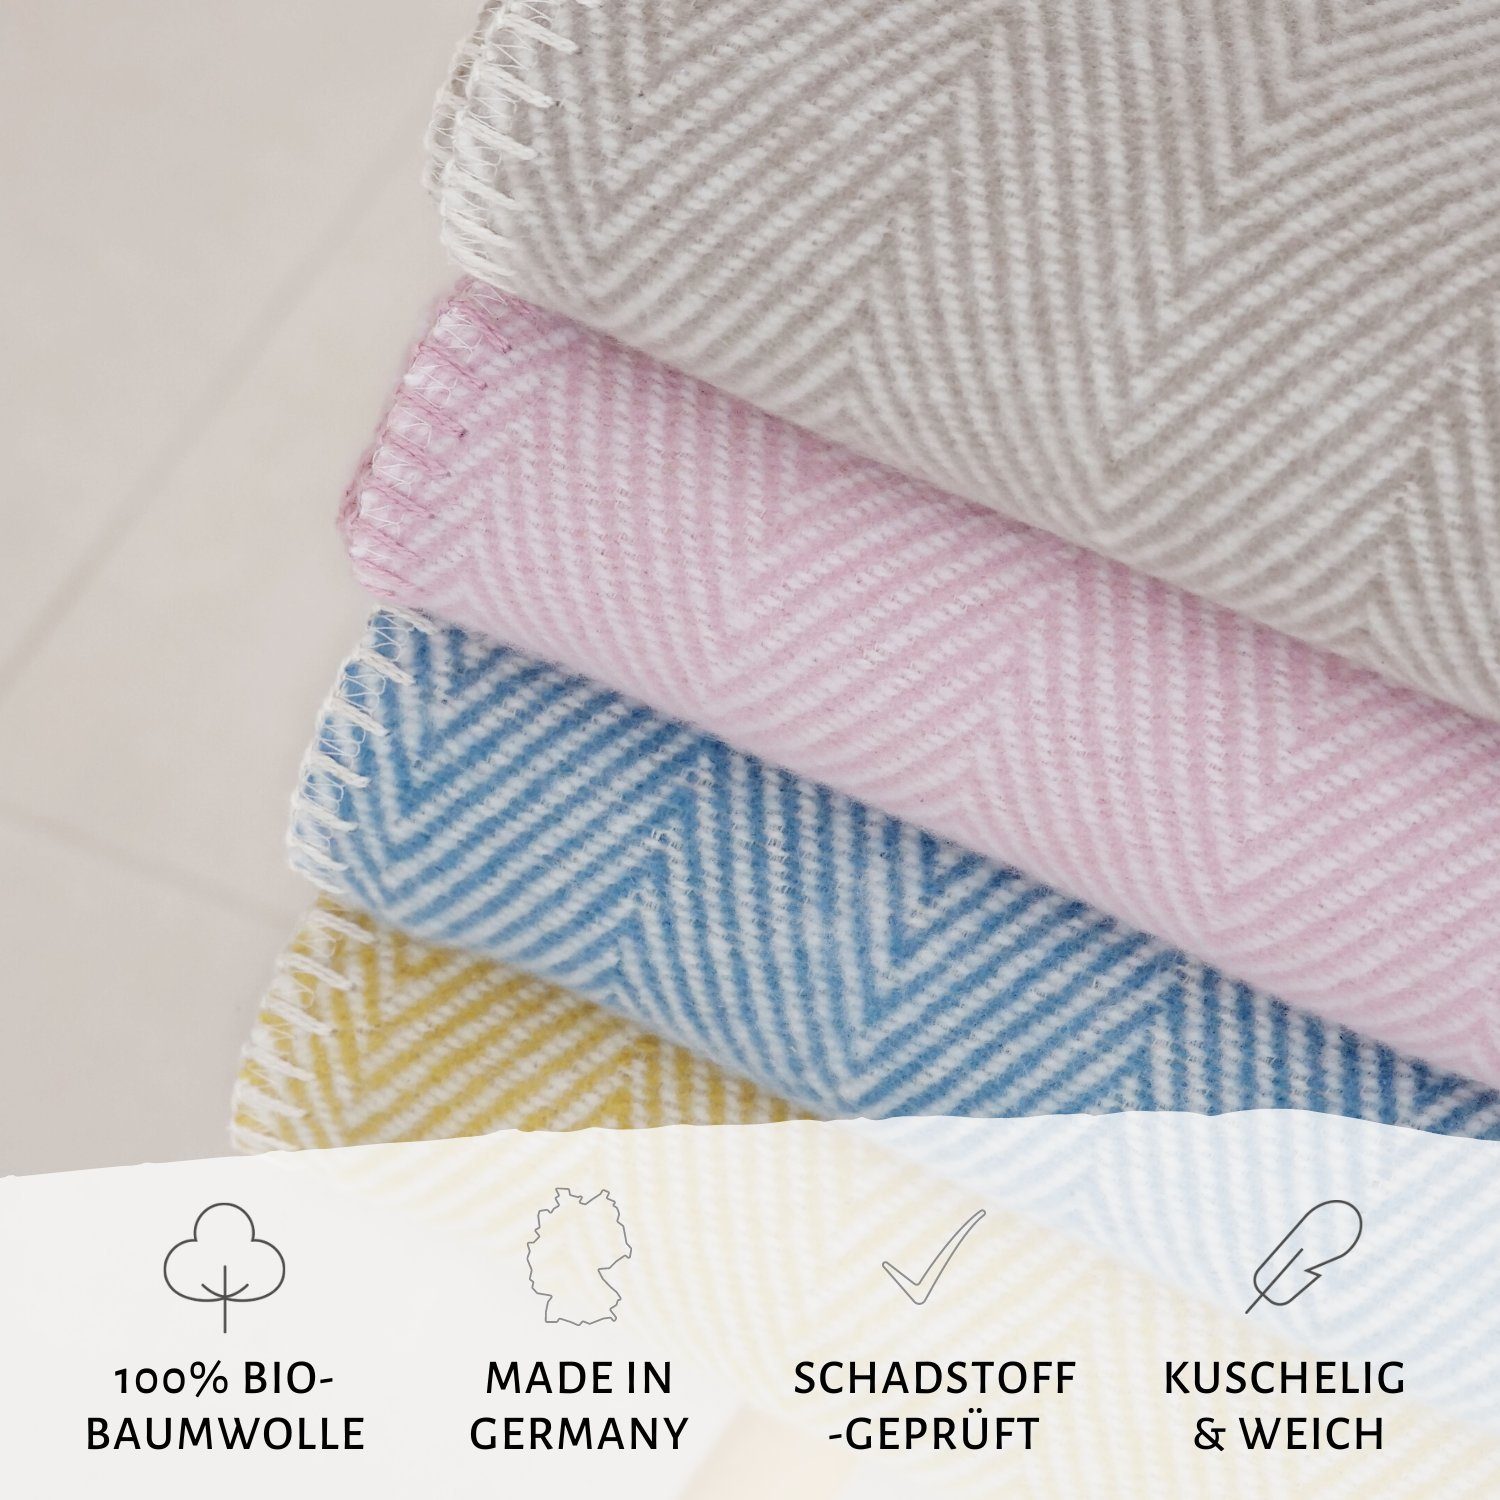 Germany, Germany OEKO-TEX Bio- gelb aus 140x200cm, Bio-Baumwolle Wolldecke weicher in RIEMA aus nachhaltiger Baumwolle Finn Kuscheldecke - leichte Made 100% - Sofadecke